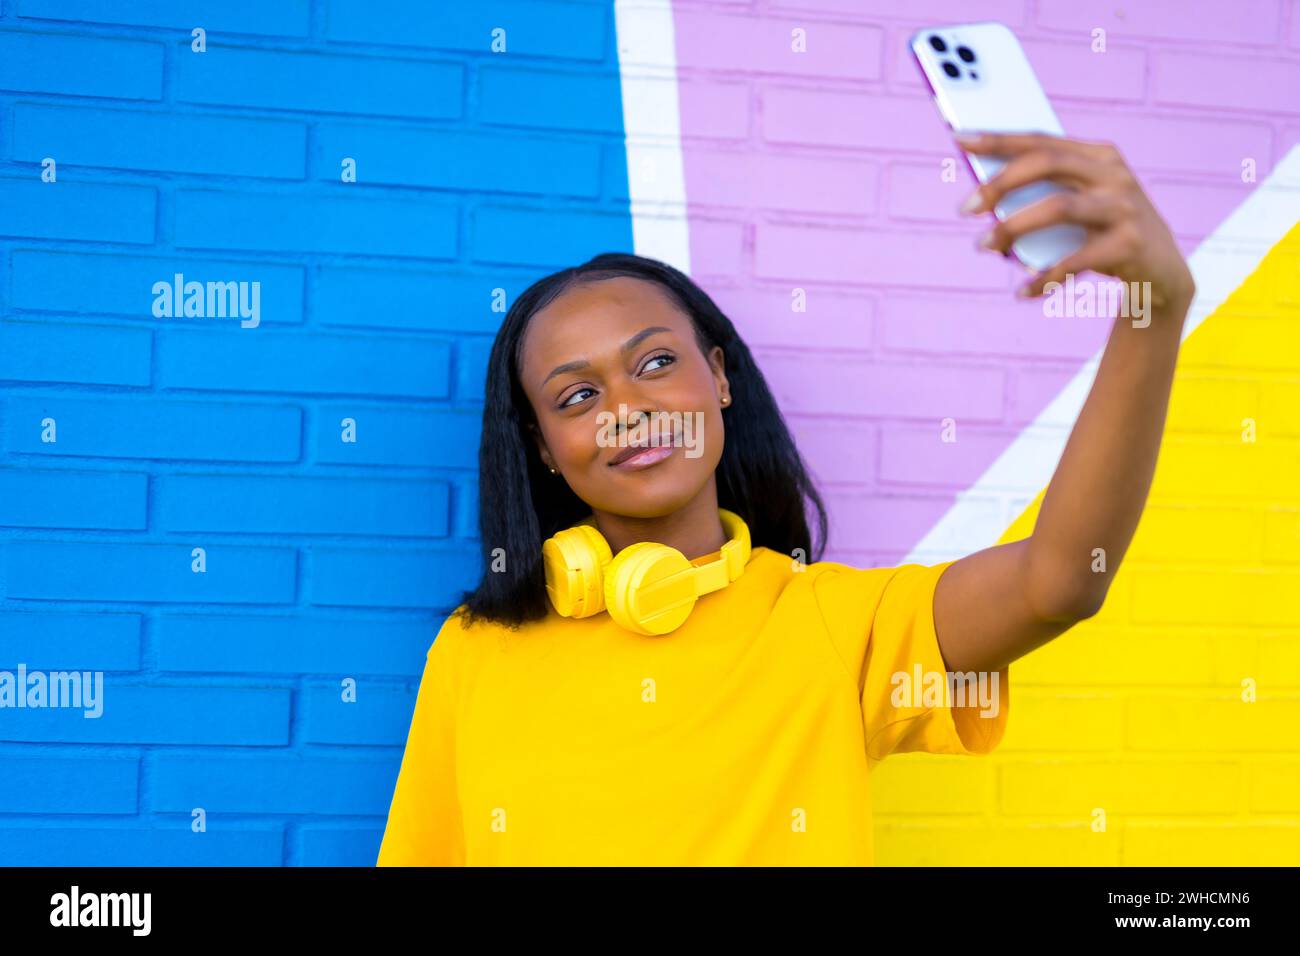 Frontales Nahporträt einer afrikanerin, die lächelnd ein Selfie gegen eine bunte Wand macht Stockfoto